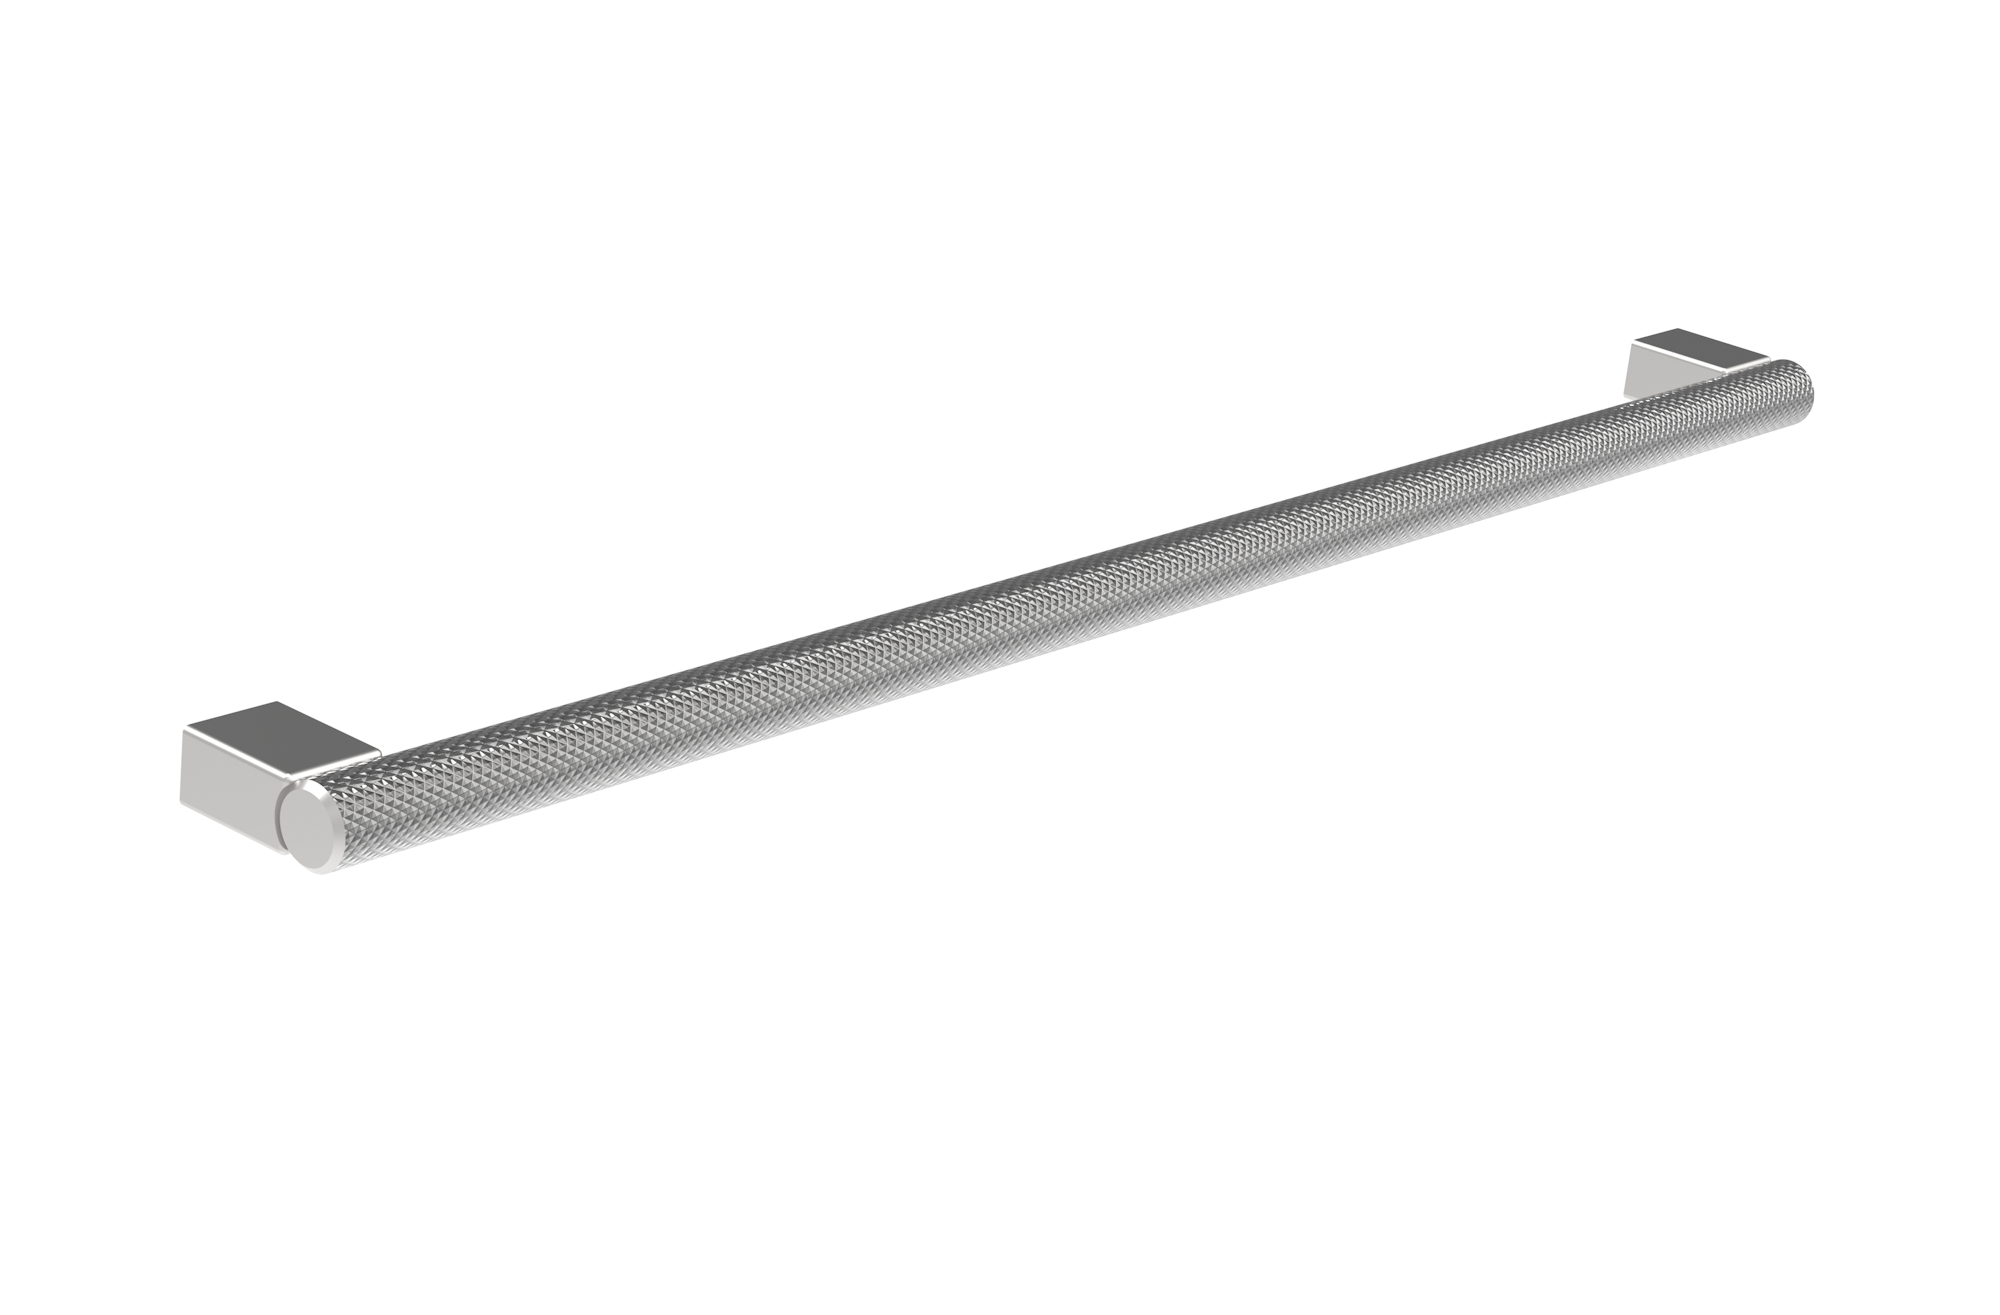 MADRID 320mm knurled handle - Stainless Steel